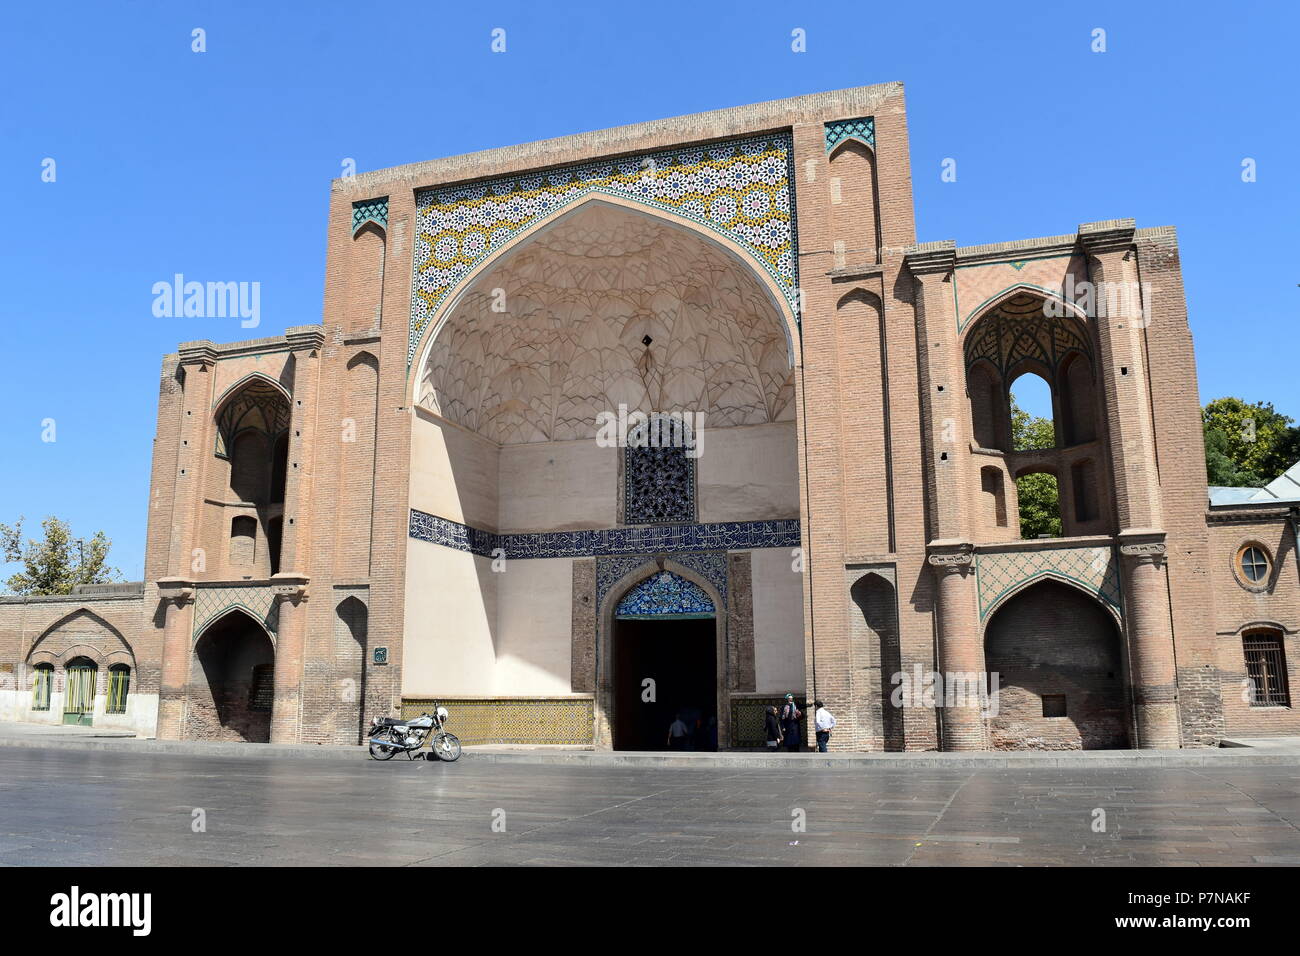 Historique de l'Iran gate iwan : belle architecture islamique et iranienne à Qazvin, en Iran Banque D'Images